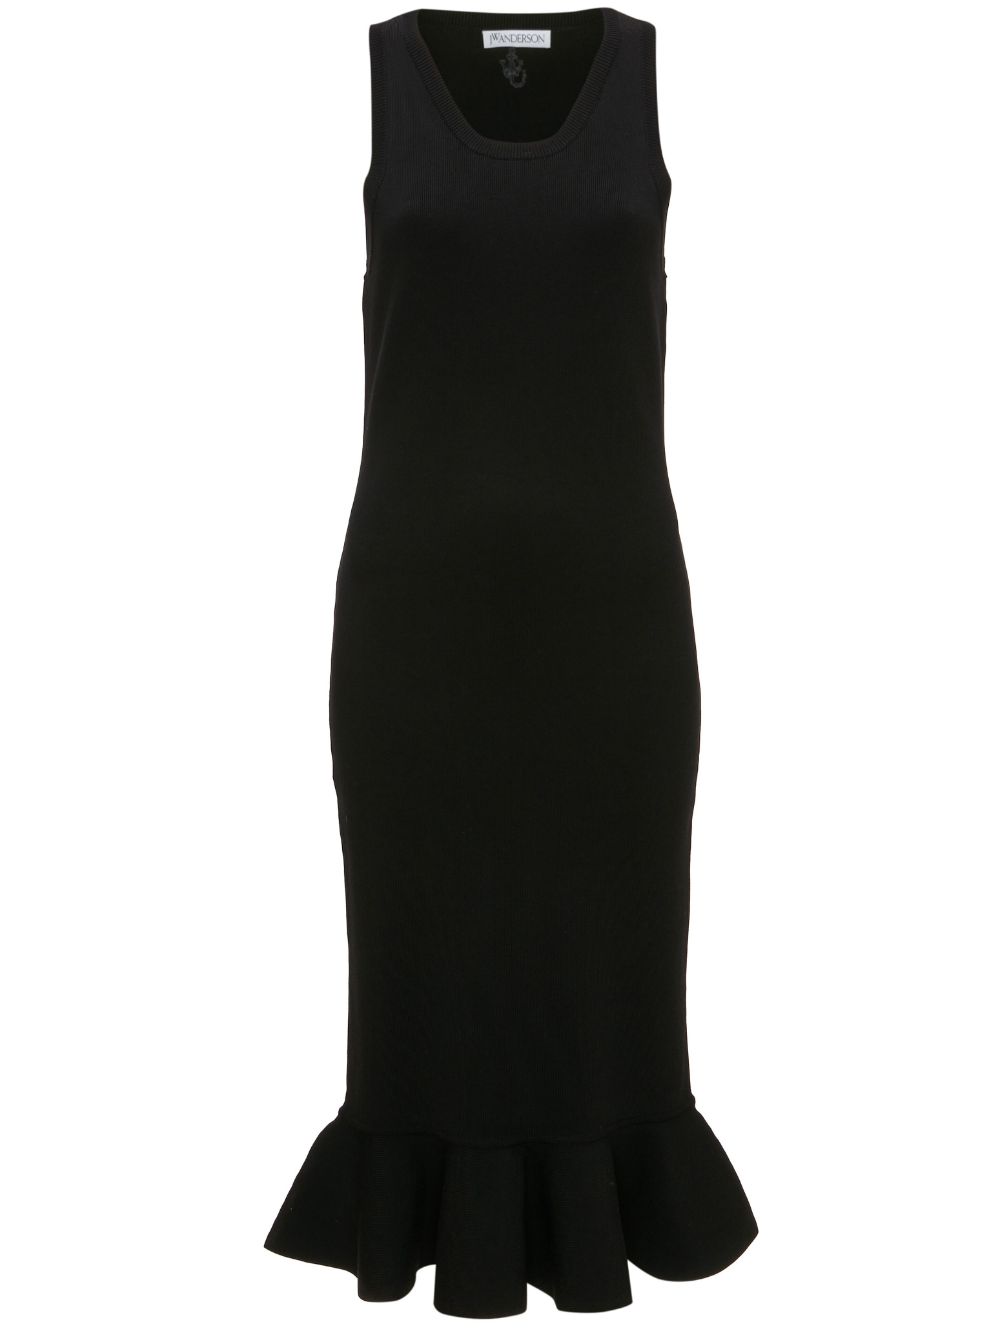 Đầm dài tay màu đen cho phụ nữ mùa FW23